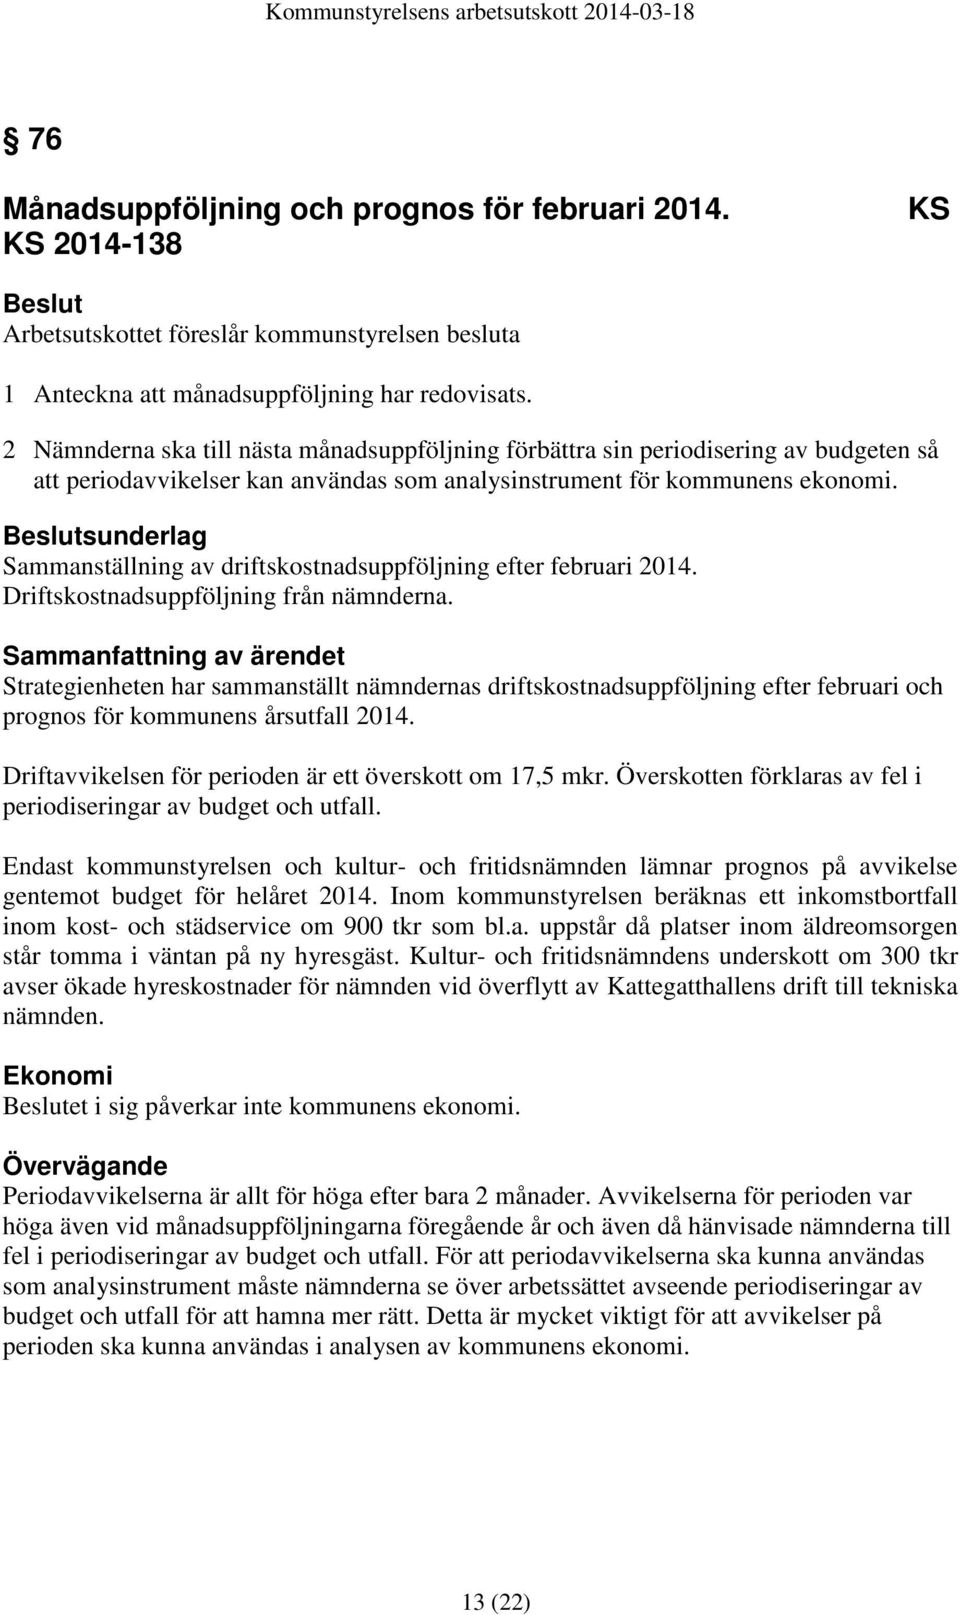 sunderlag Sammanställning av driftskostnadsuppföljning efter februari 2014. Driftskostnadsuppföljning från nämnderna.